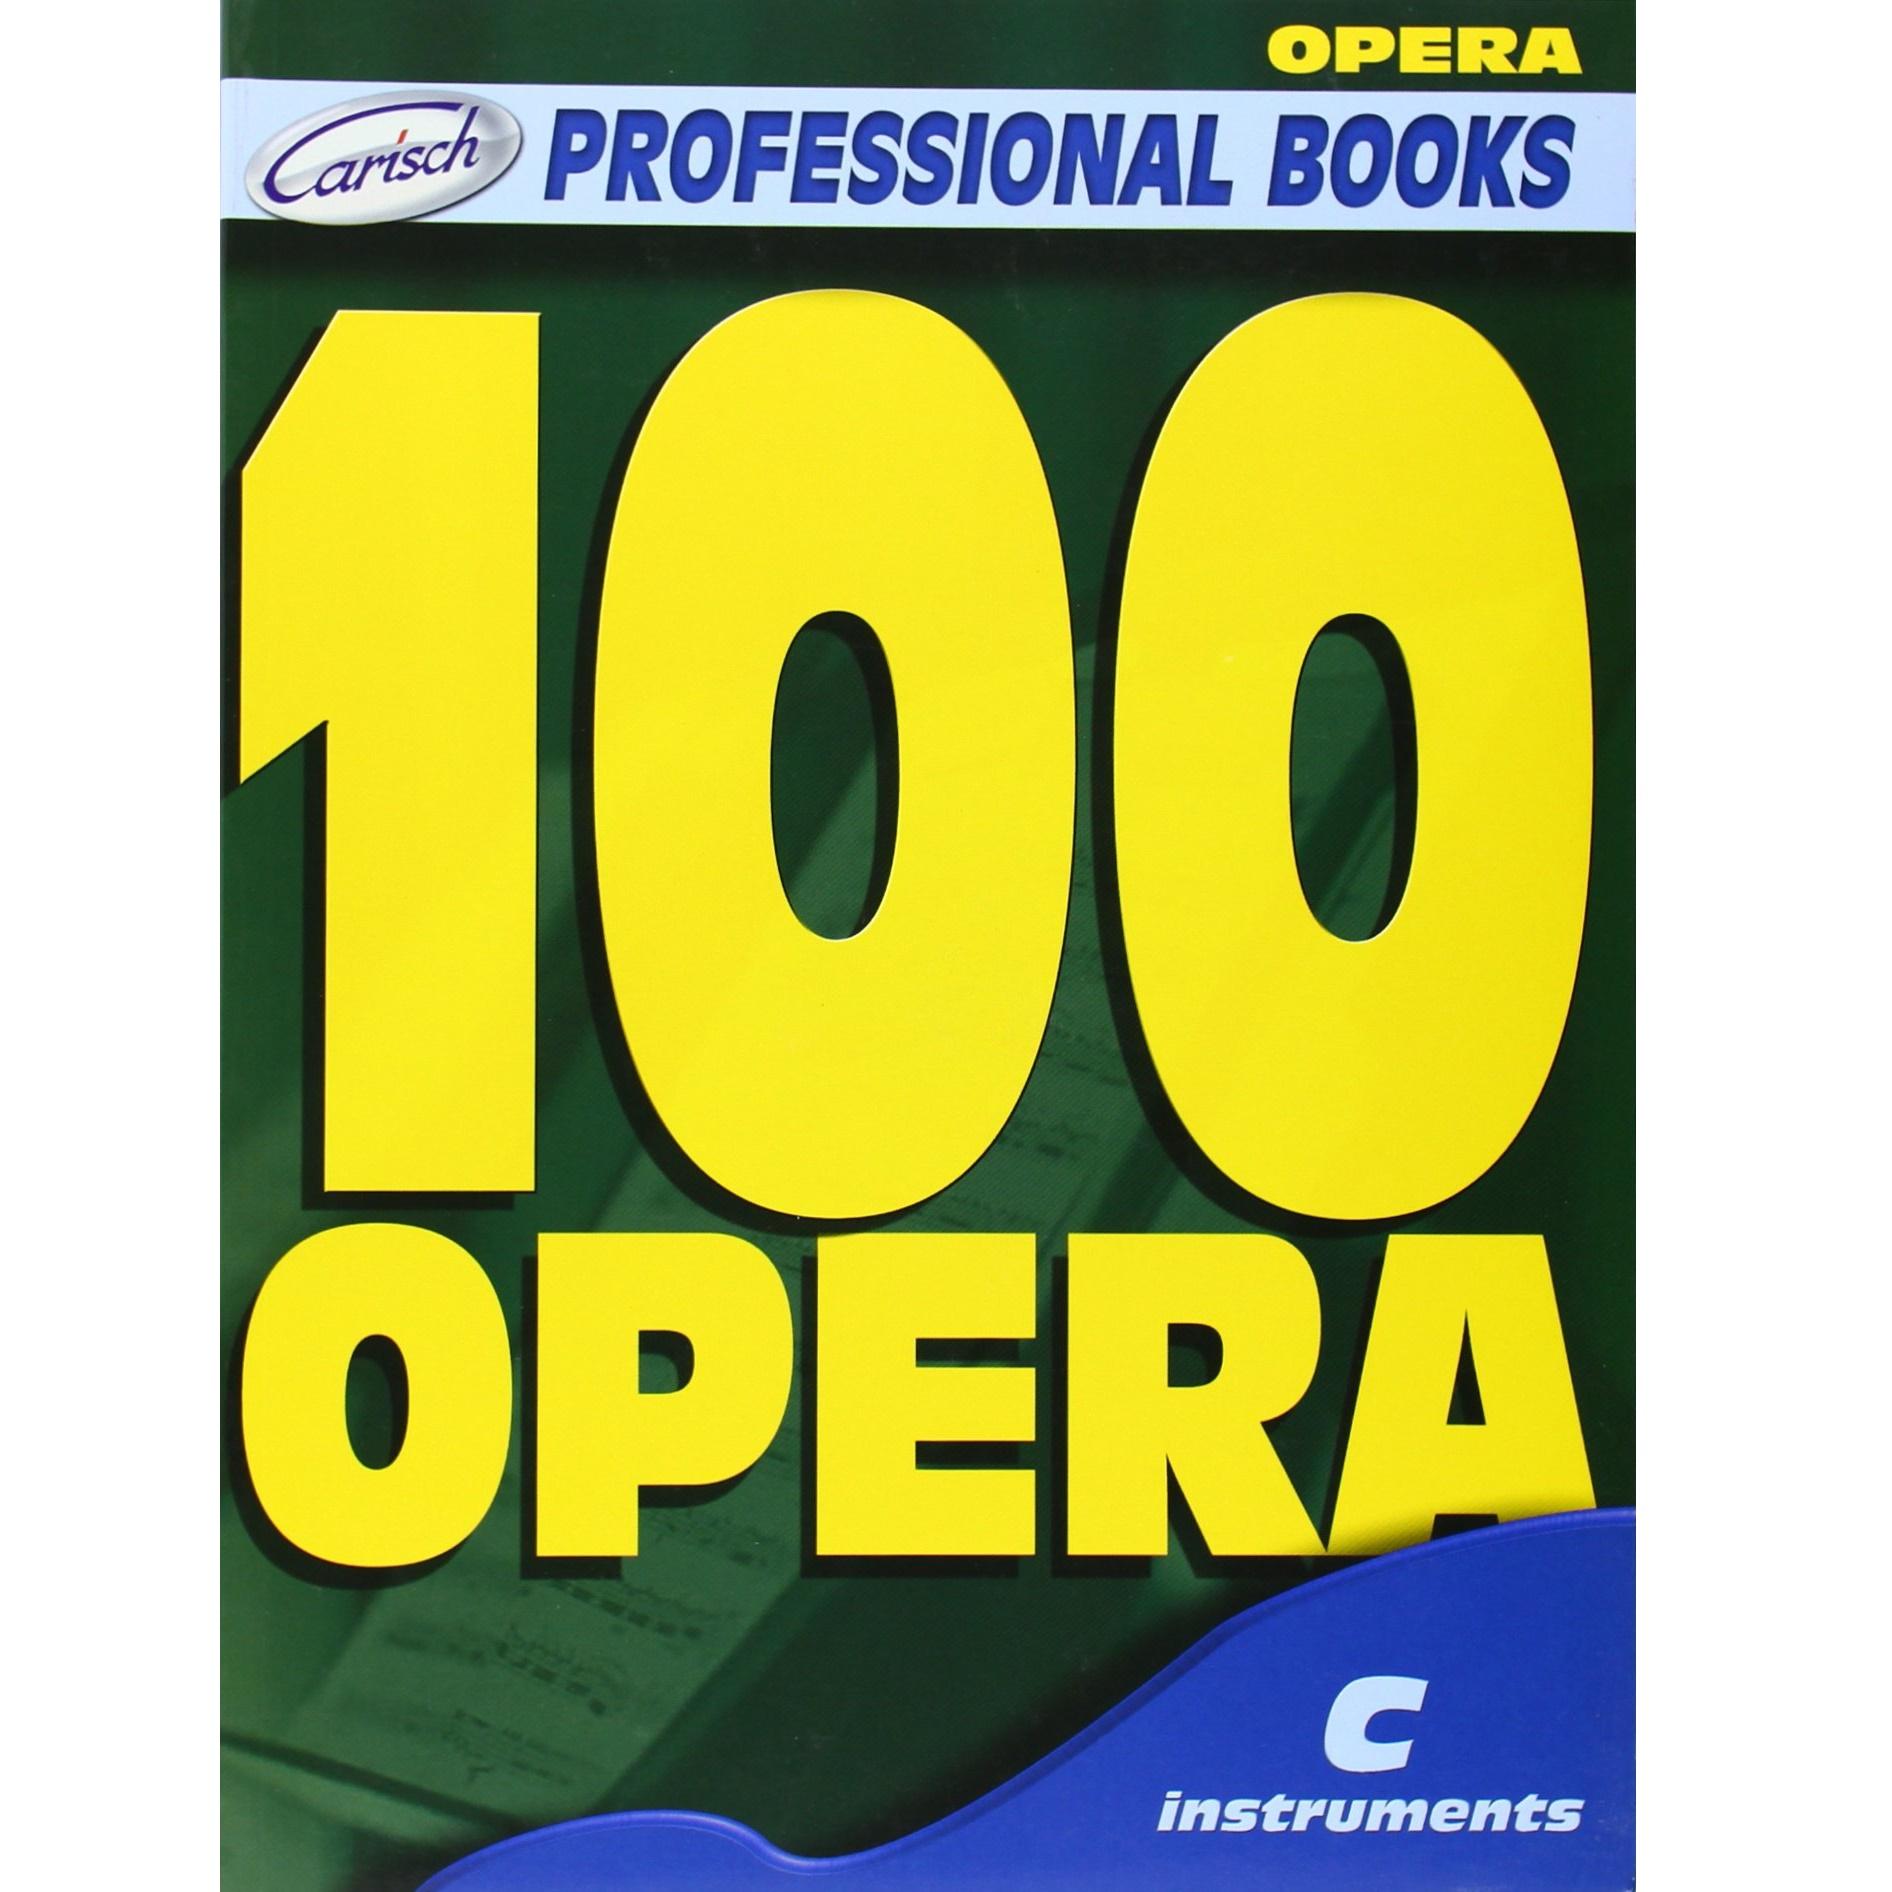 Professional Books 100 OPERA - Carisch